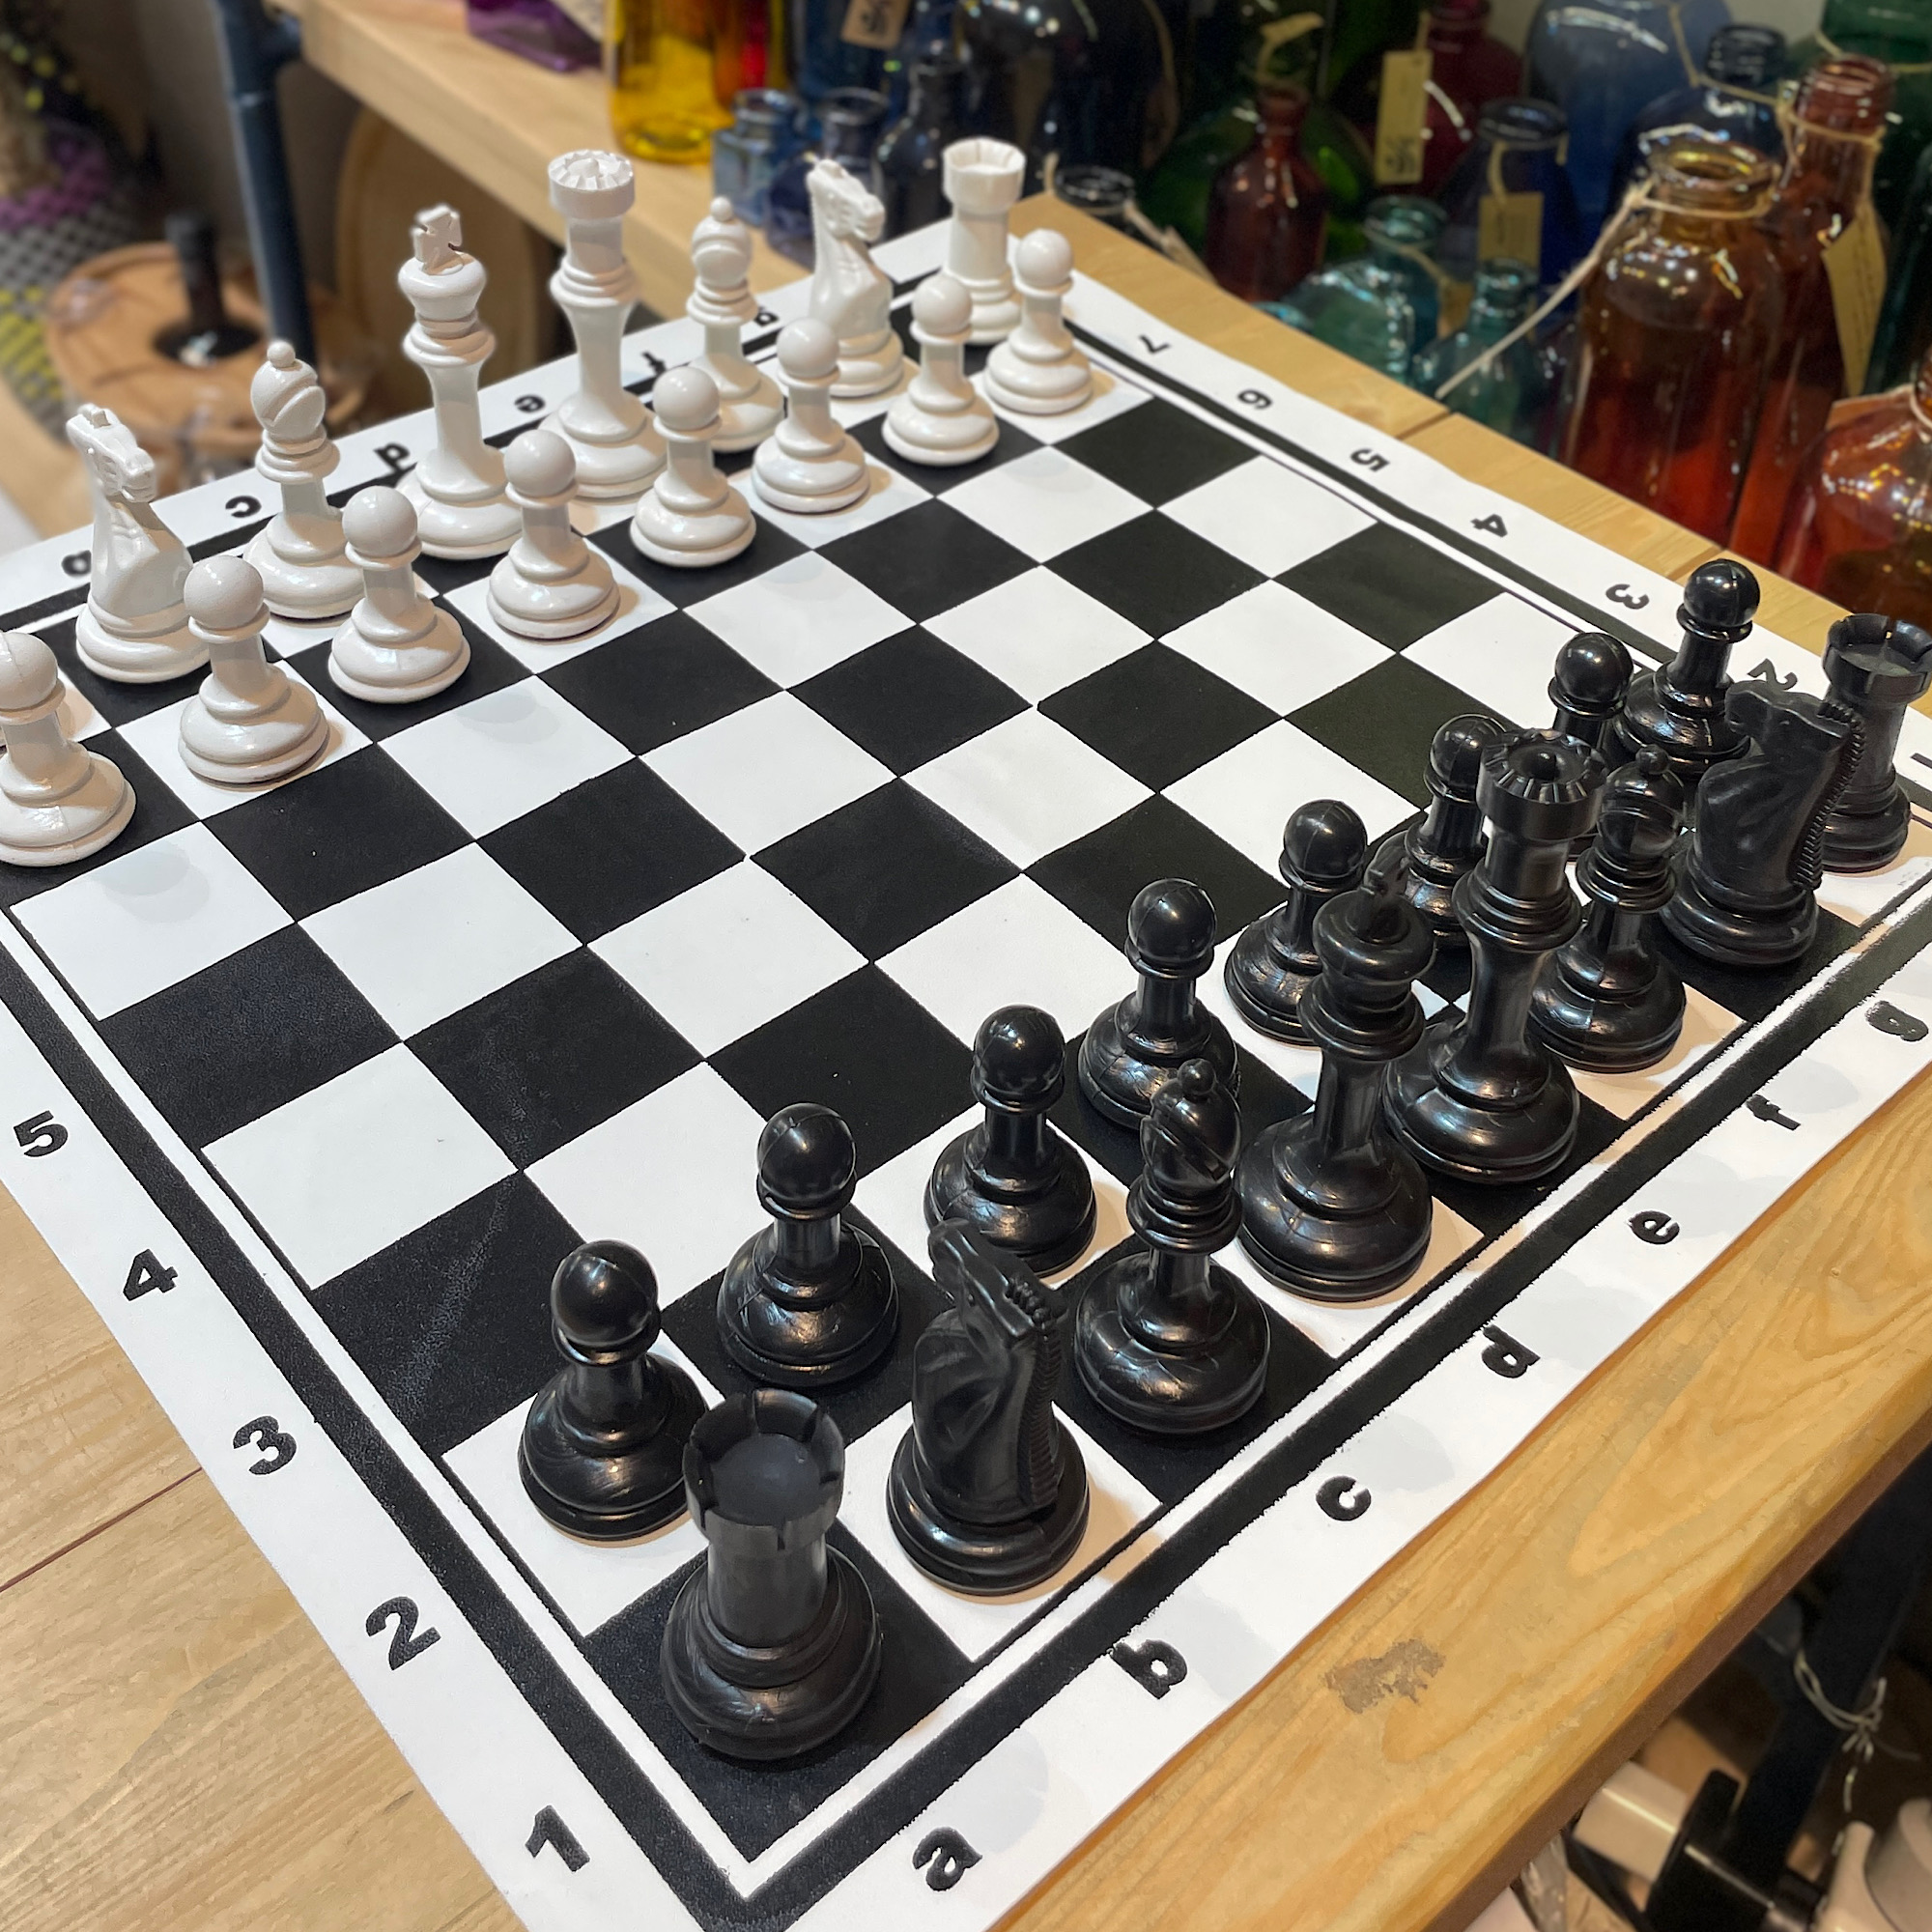 شطرنج استاندارد اعلا مورد تایید فدراسیون درجه ۱